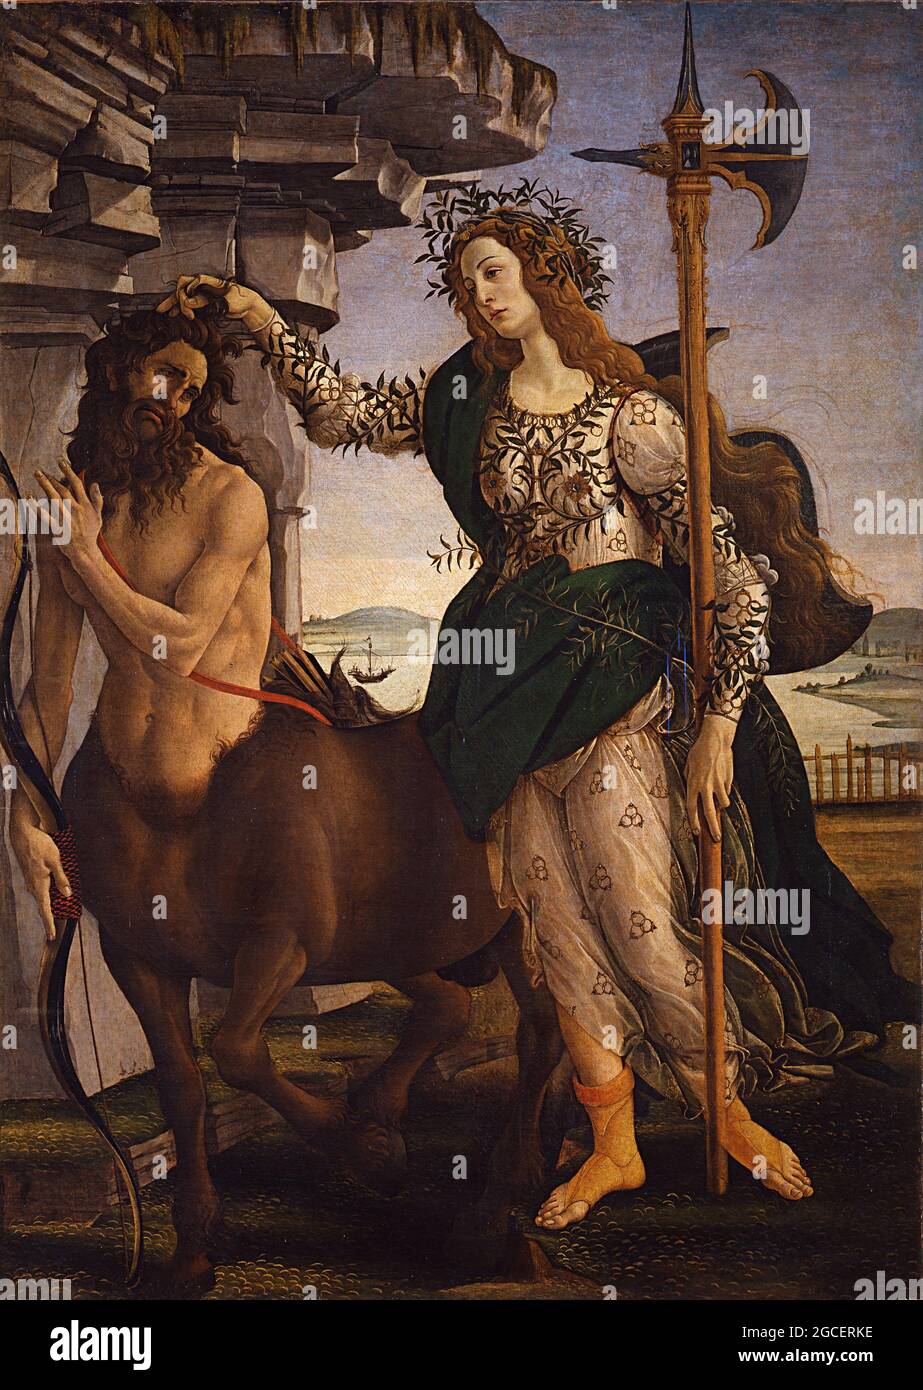 Titolo: Pallas e il Centauro Creatore: Sandro Botticelli Data: c.1480 Medium: Tempera su pannello dimensioni: 207 x 148 cm Località: Galleria degli Uffizi, Firenze, Foto Stock